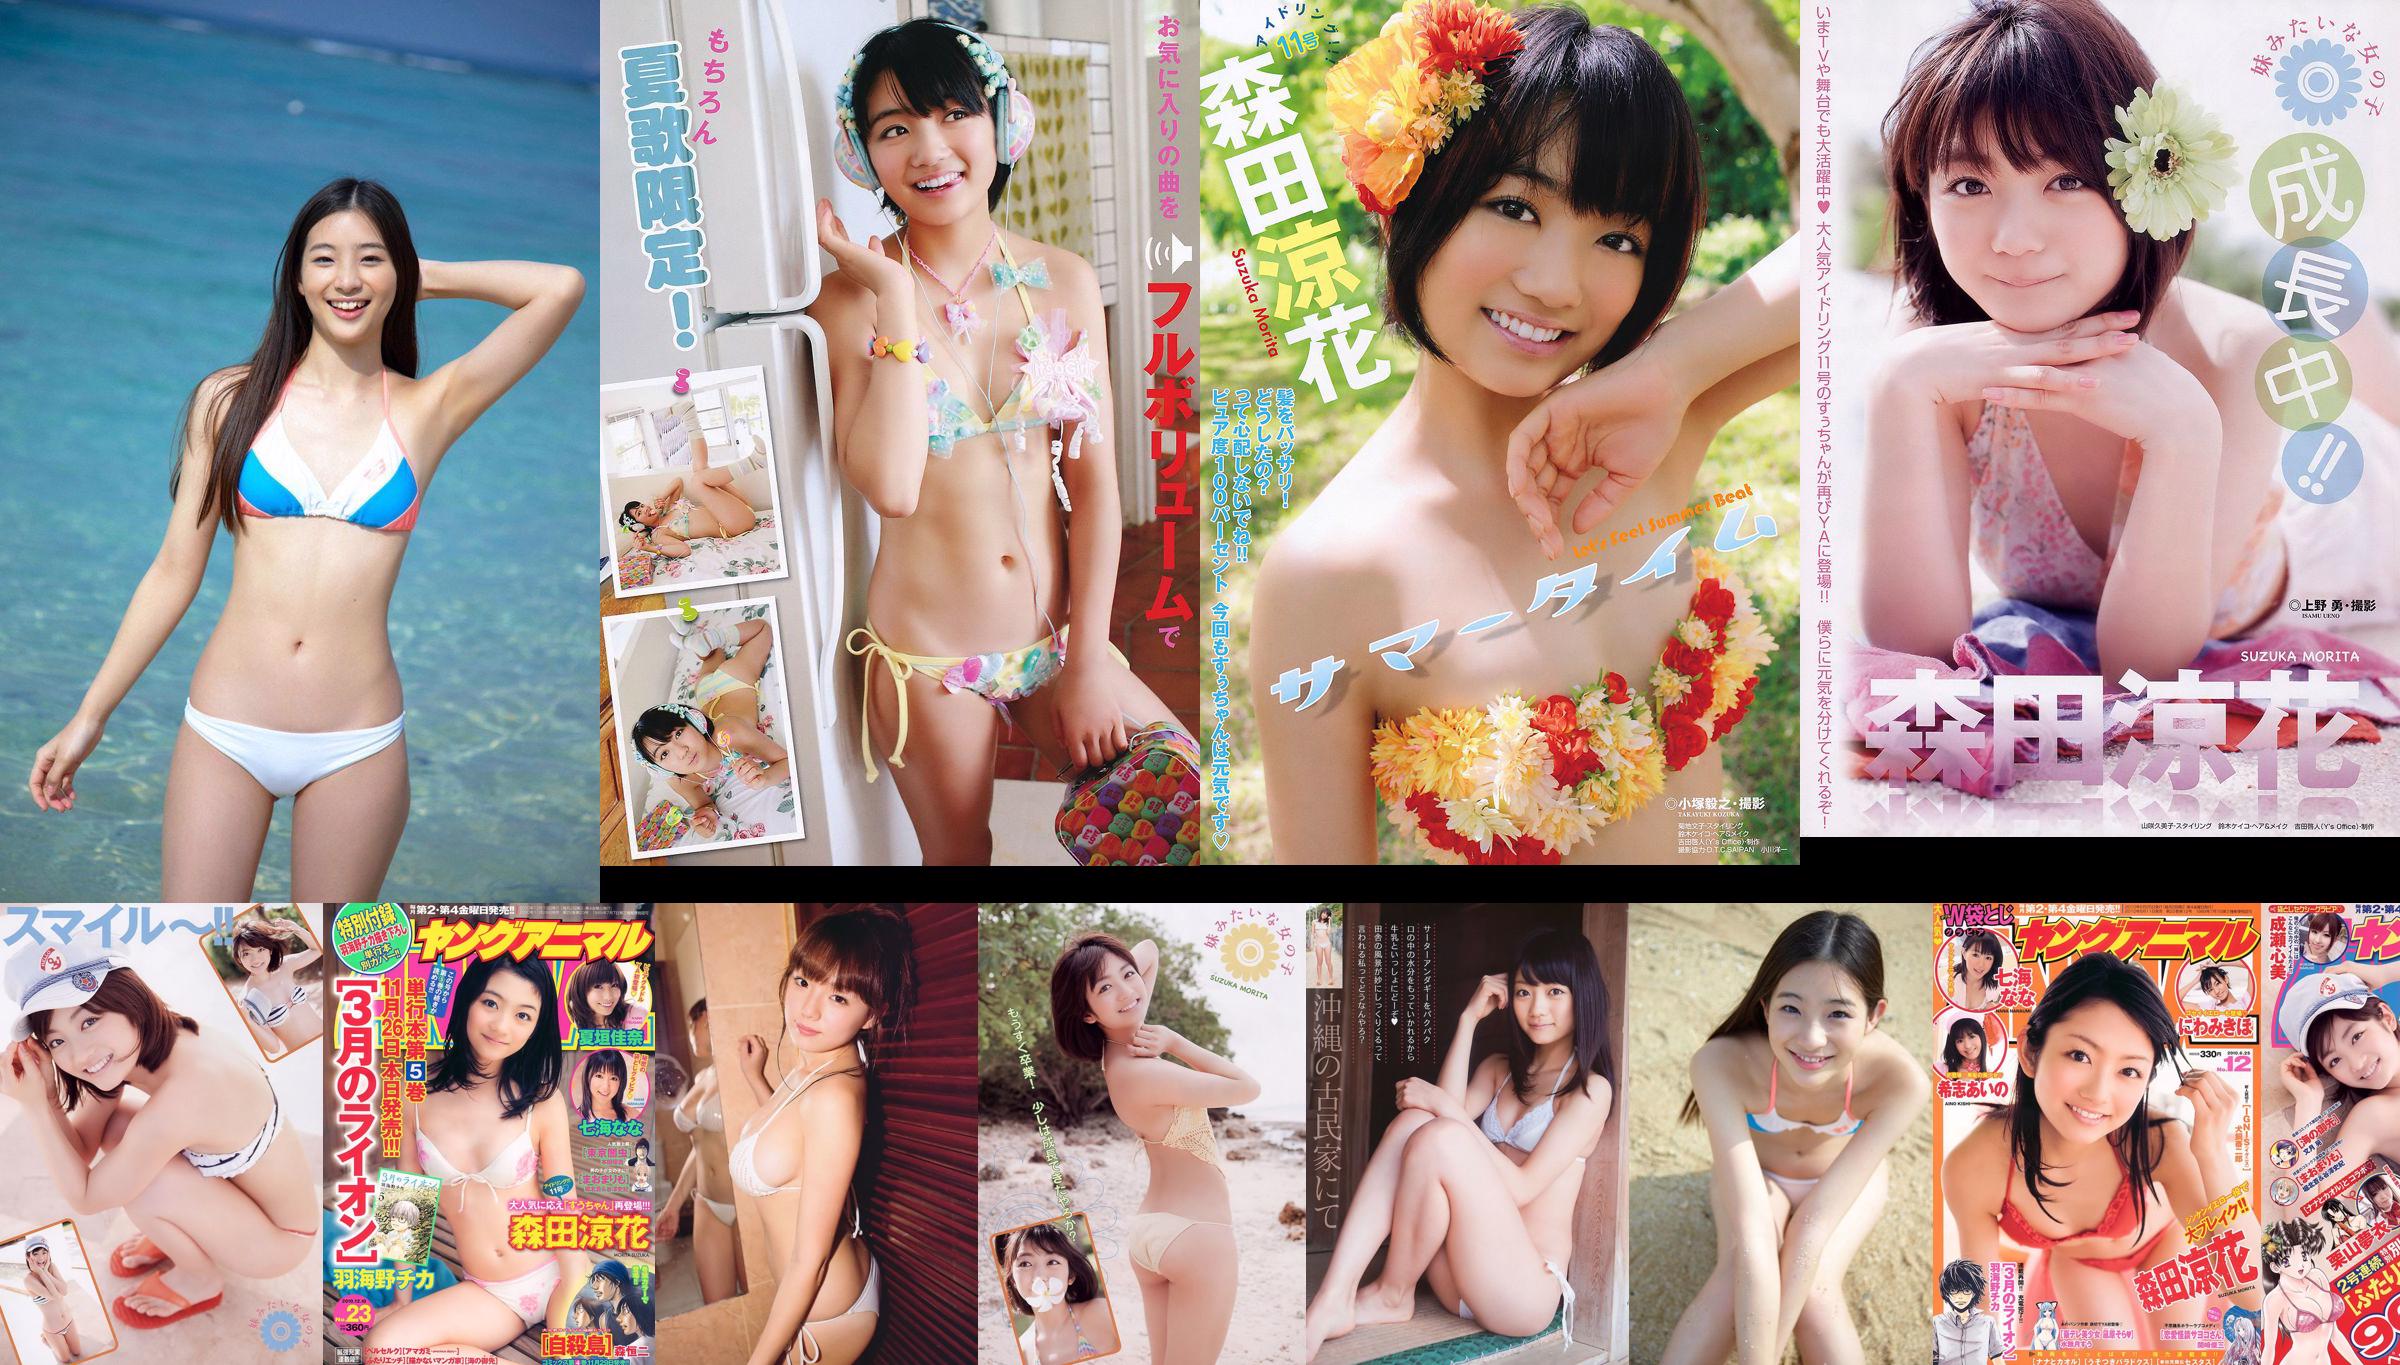 [Weekly Big Comic Spirits] Akari Hayami 2014 No.46 Photograph No.0725f0 Page 2